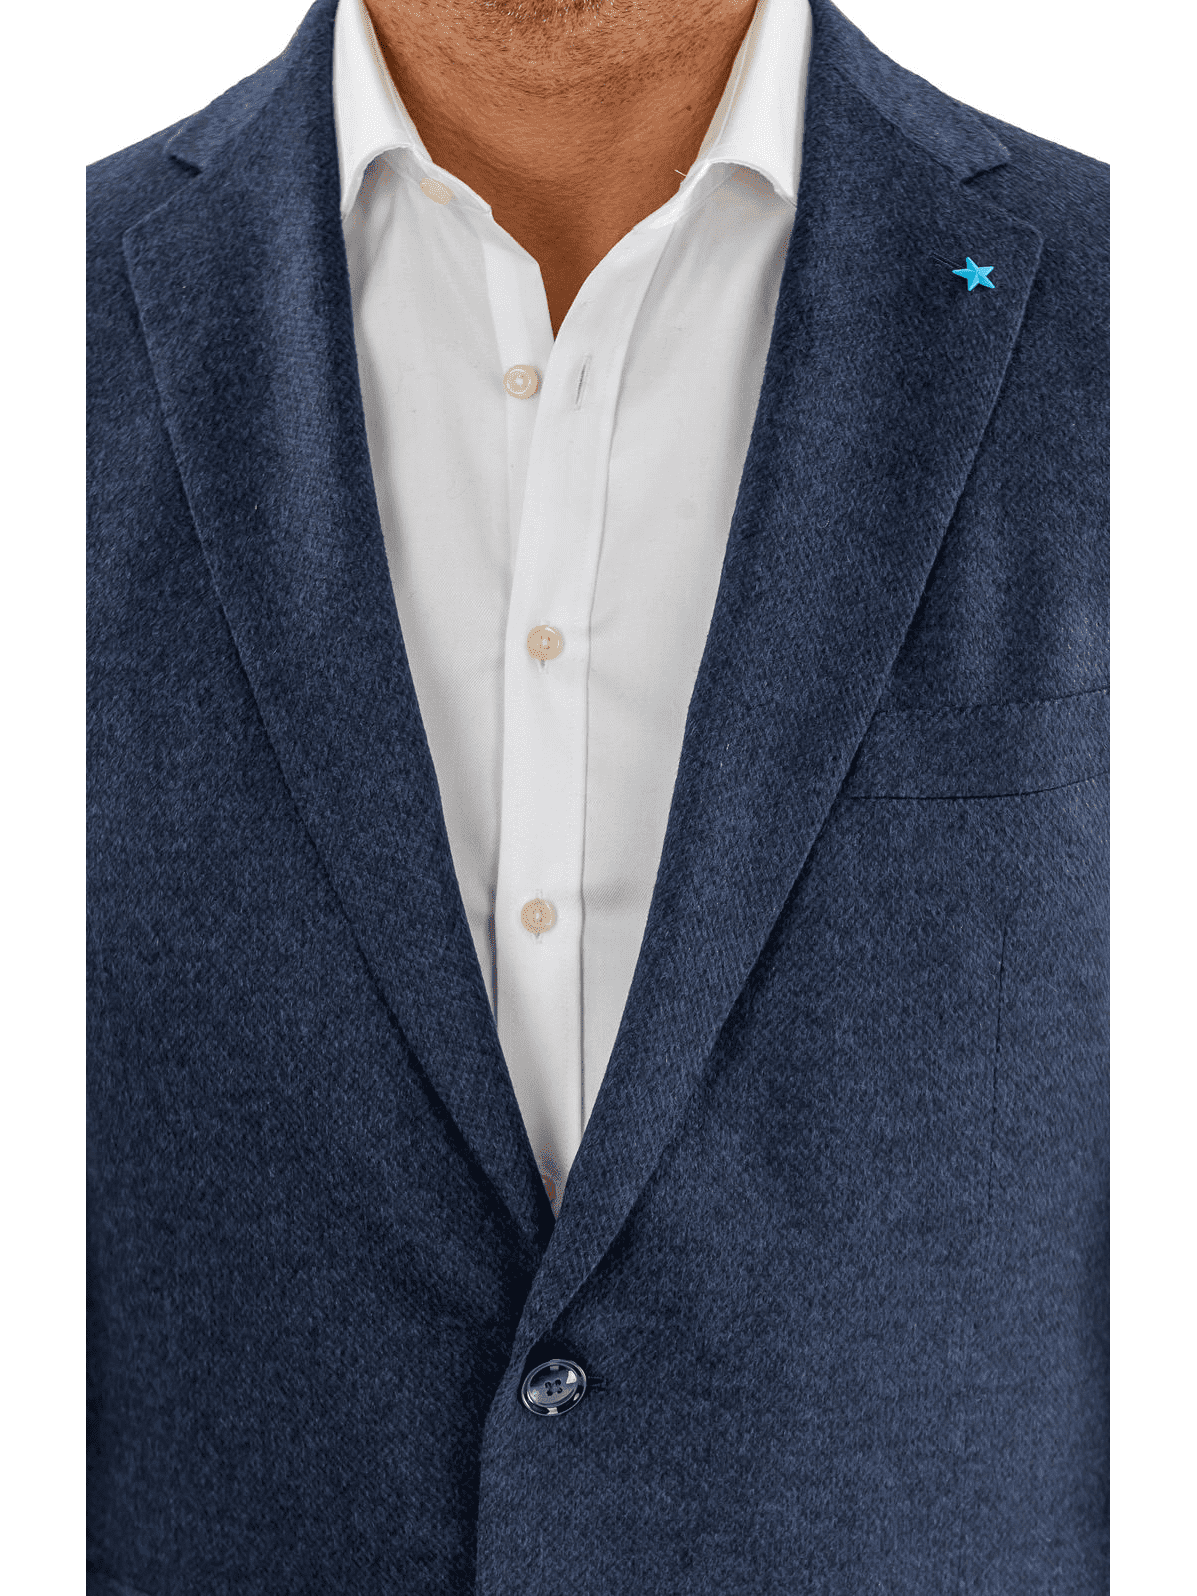 Blujacket BLAZERS Blujacket Mens Navy Blue Regular Fit Silk Cashmere 2 Button Blazer Sportcoat